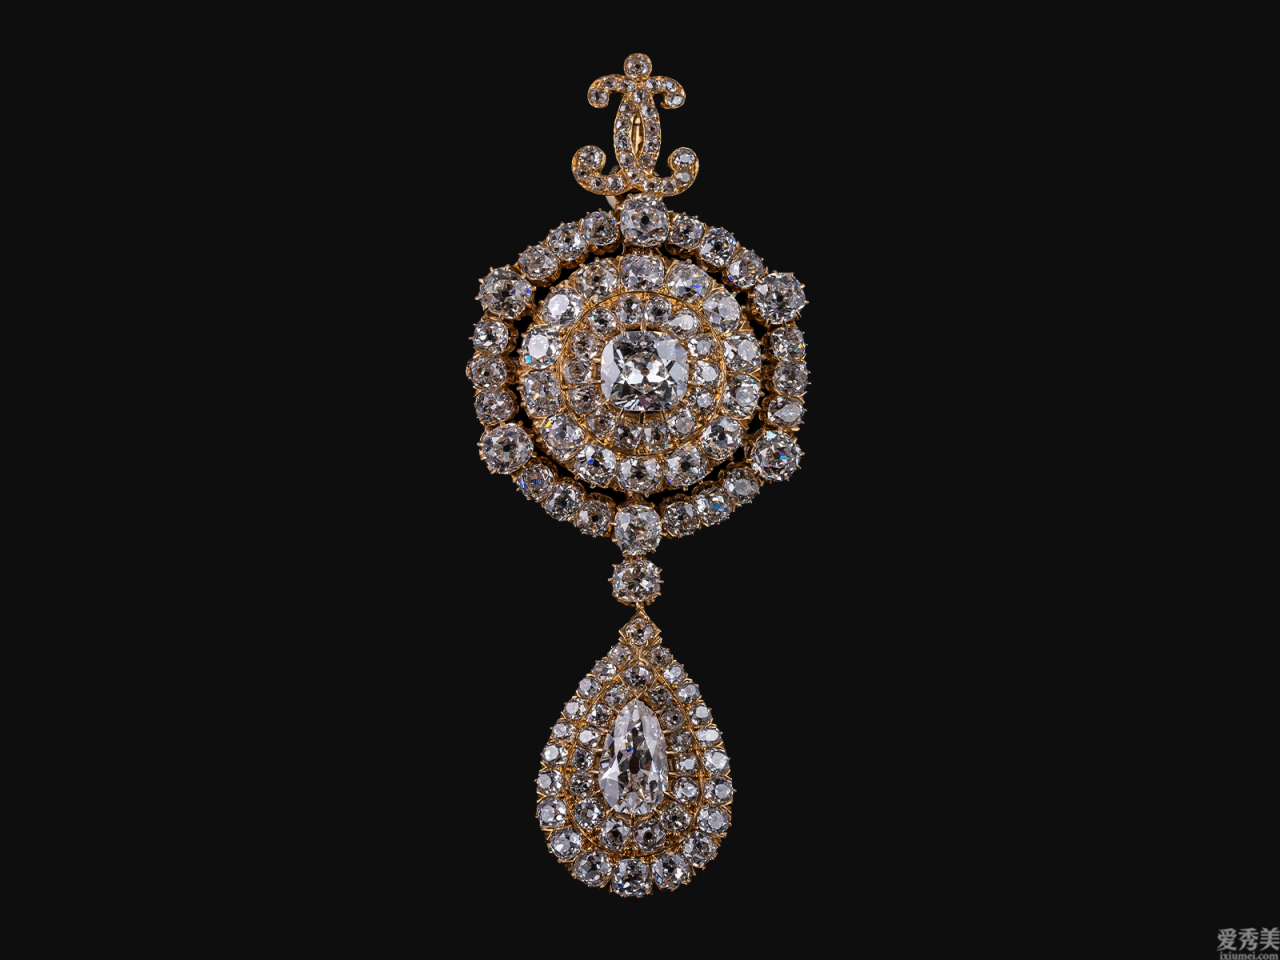 歐洲宮廷珠寶系列產品之「五」覺醒